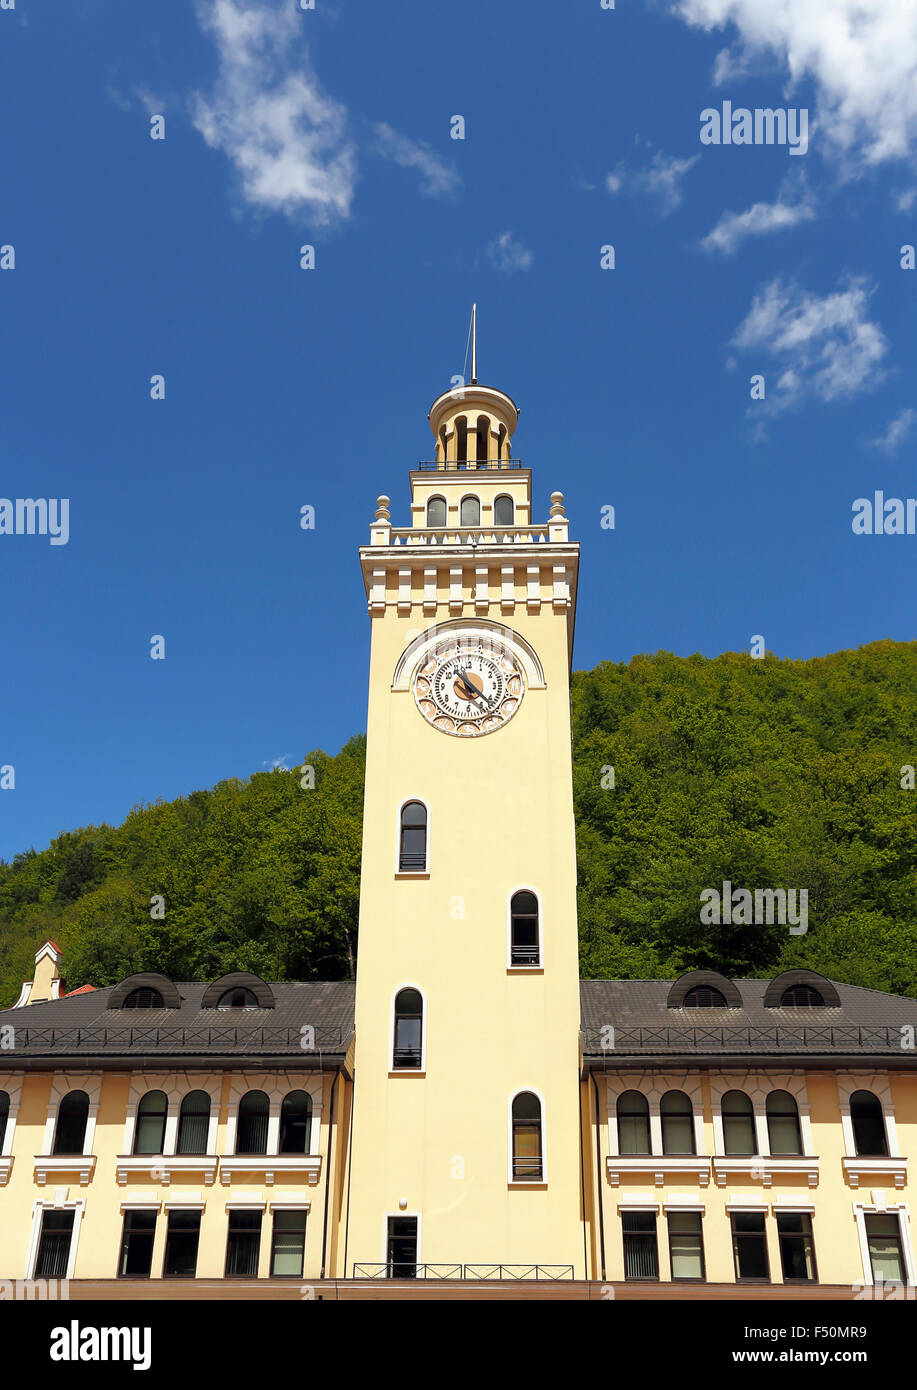 Torre bianca con la guglia e un orologio con i segni zodiacali sul quadrante Foto Stock